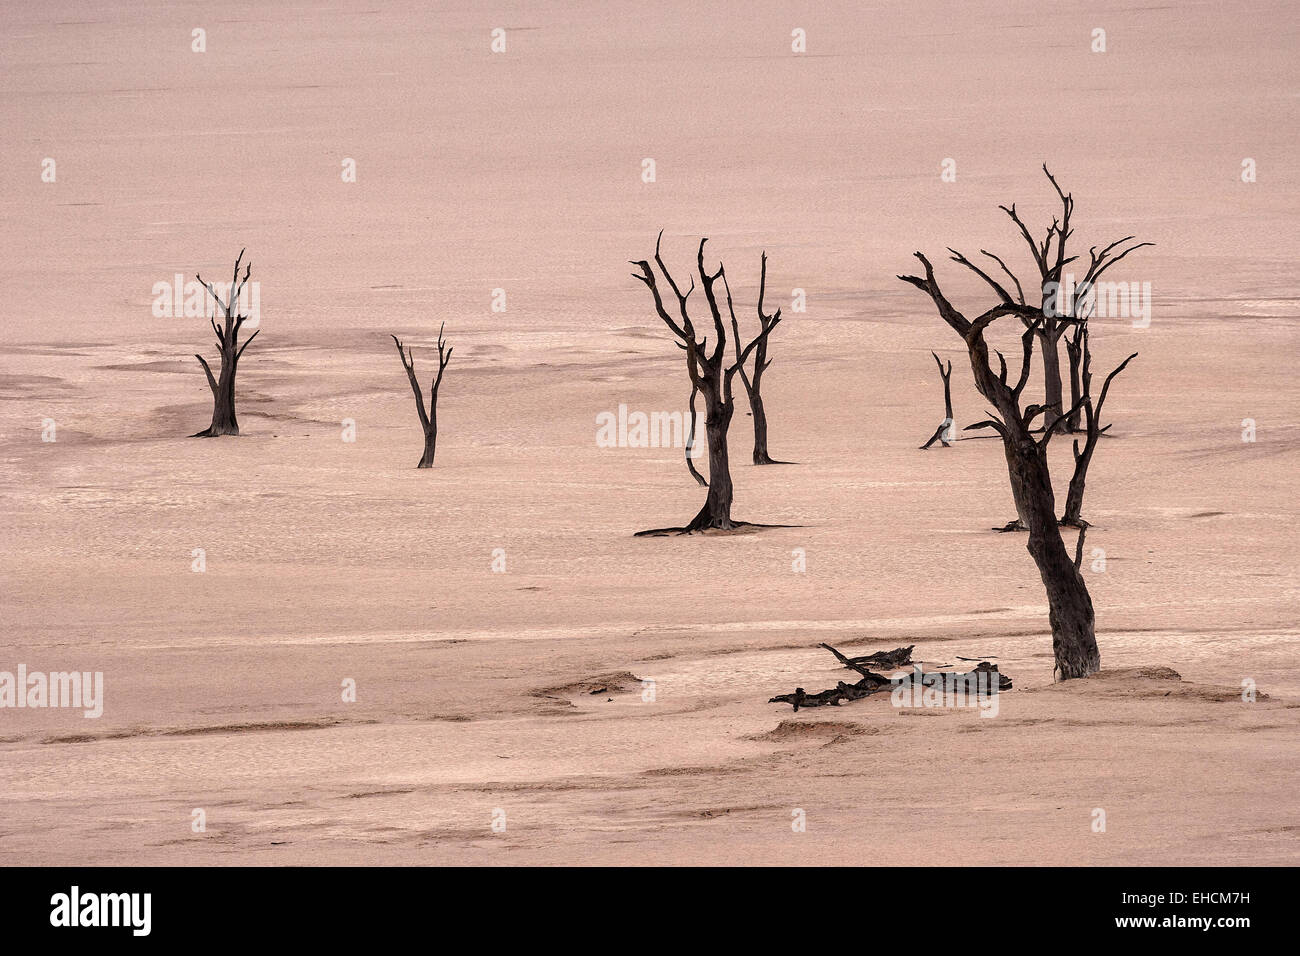 Dead camel thorn trees (Vachellia erioloba), Salztonpfanne, Dead Vlei Sossusvlei, Namib Desert, Namib-Naukluft National Park Stock Photo